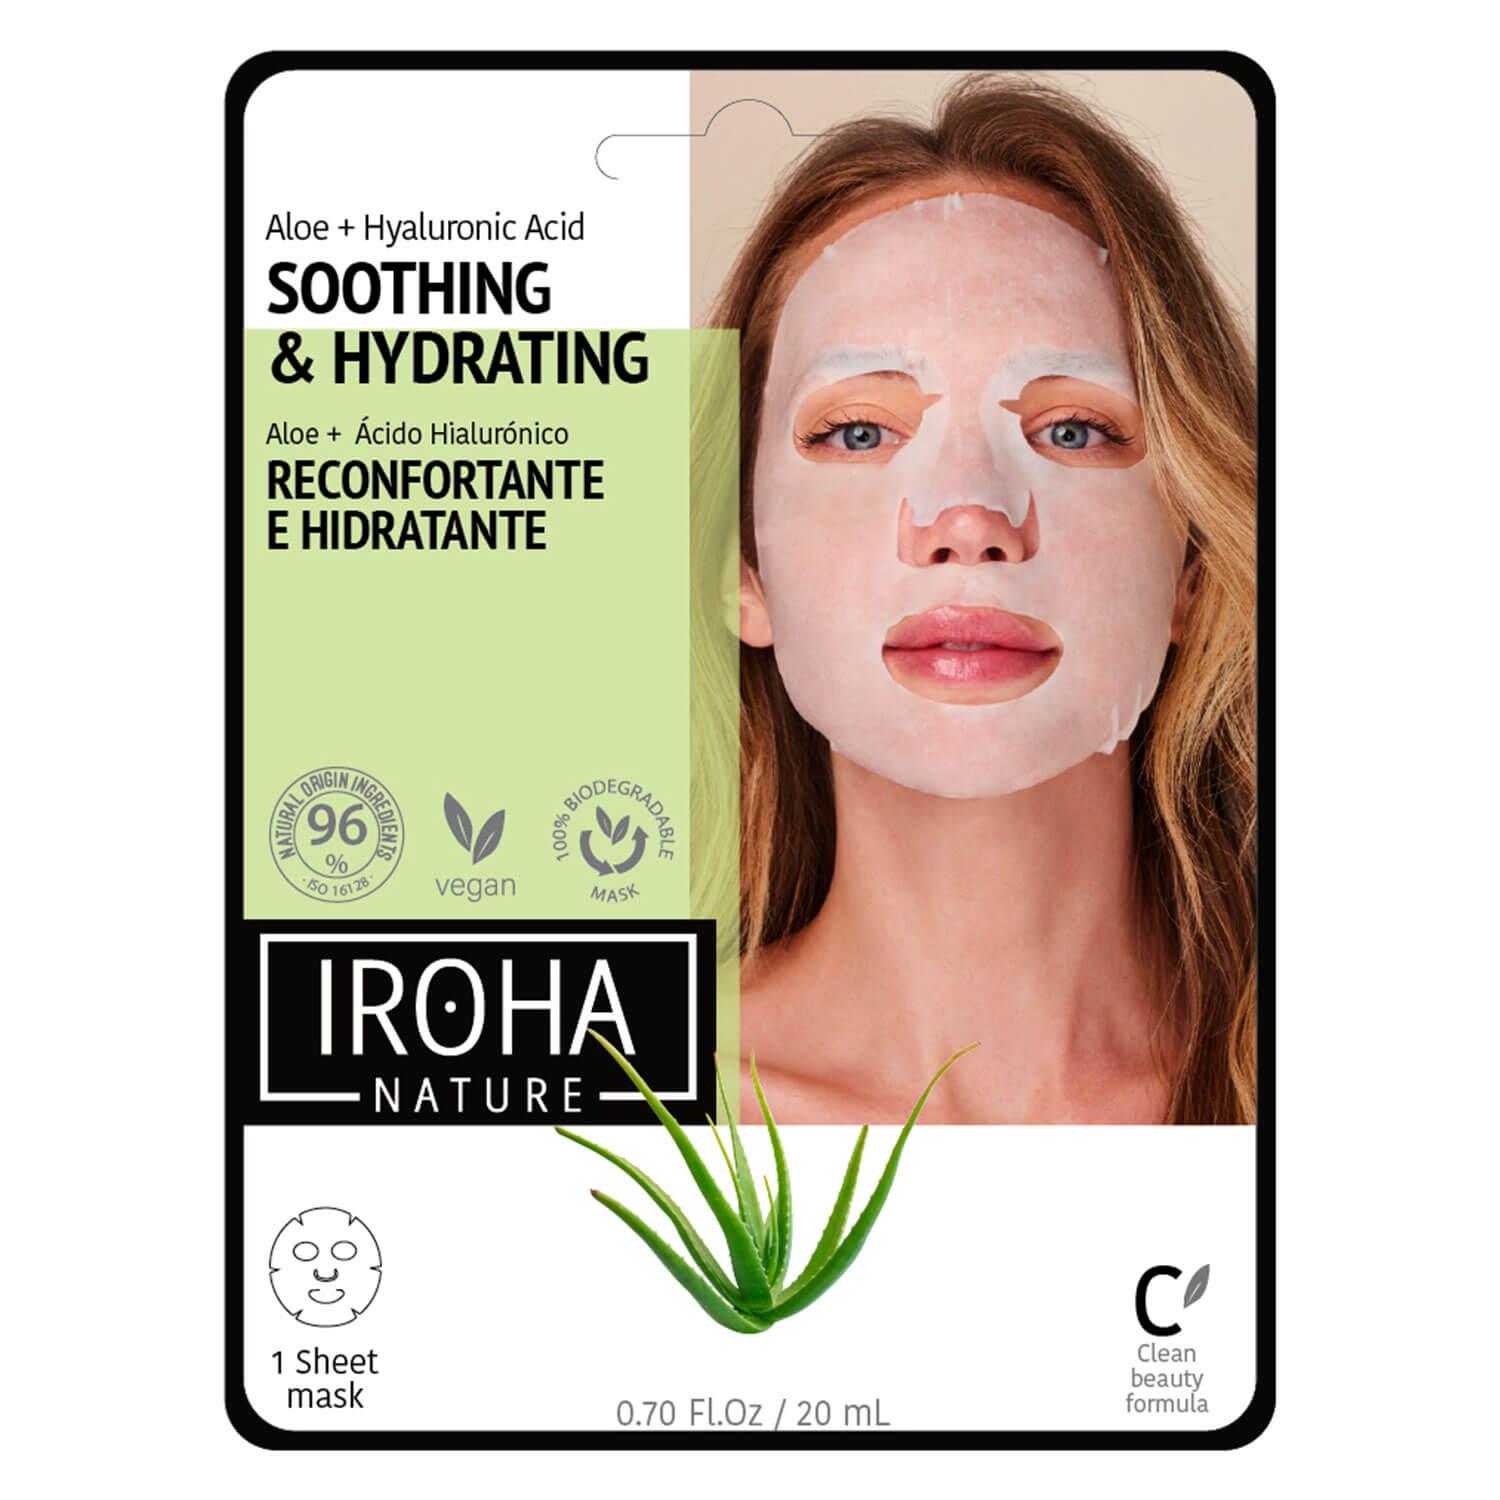 Iroha Nature - Tissue Face Mask Moisturizing 